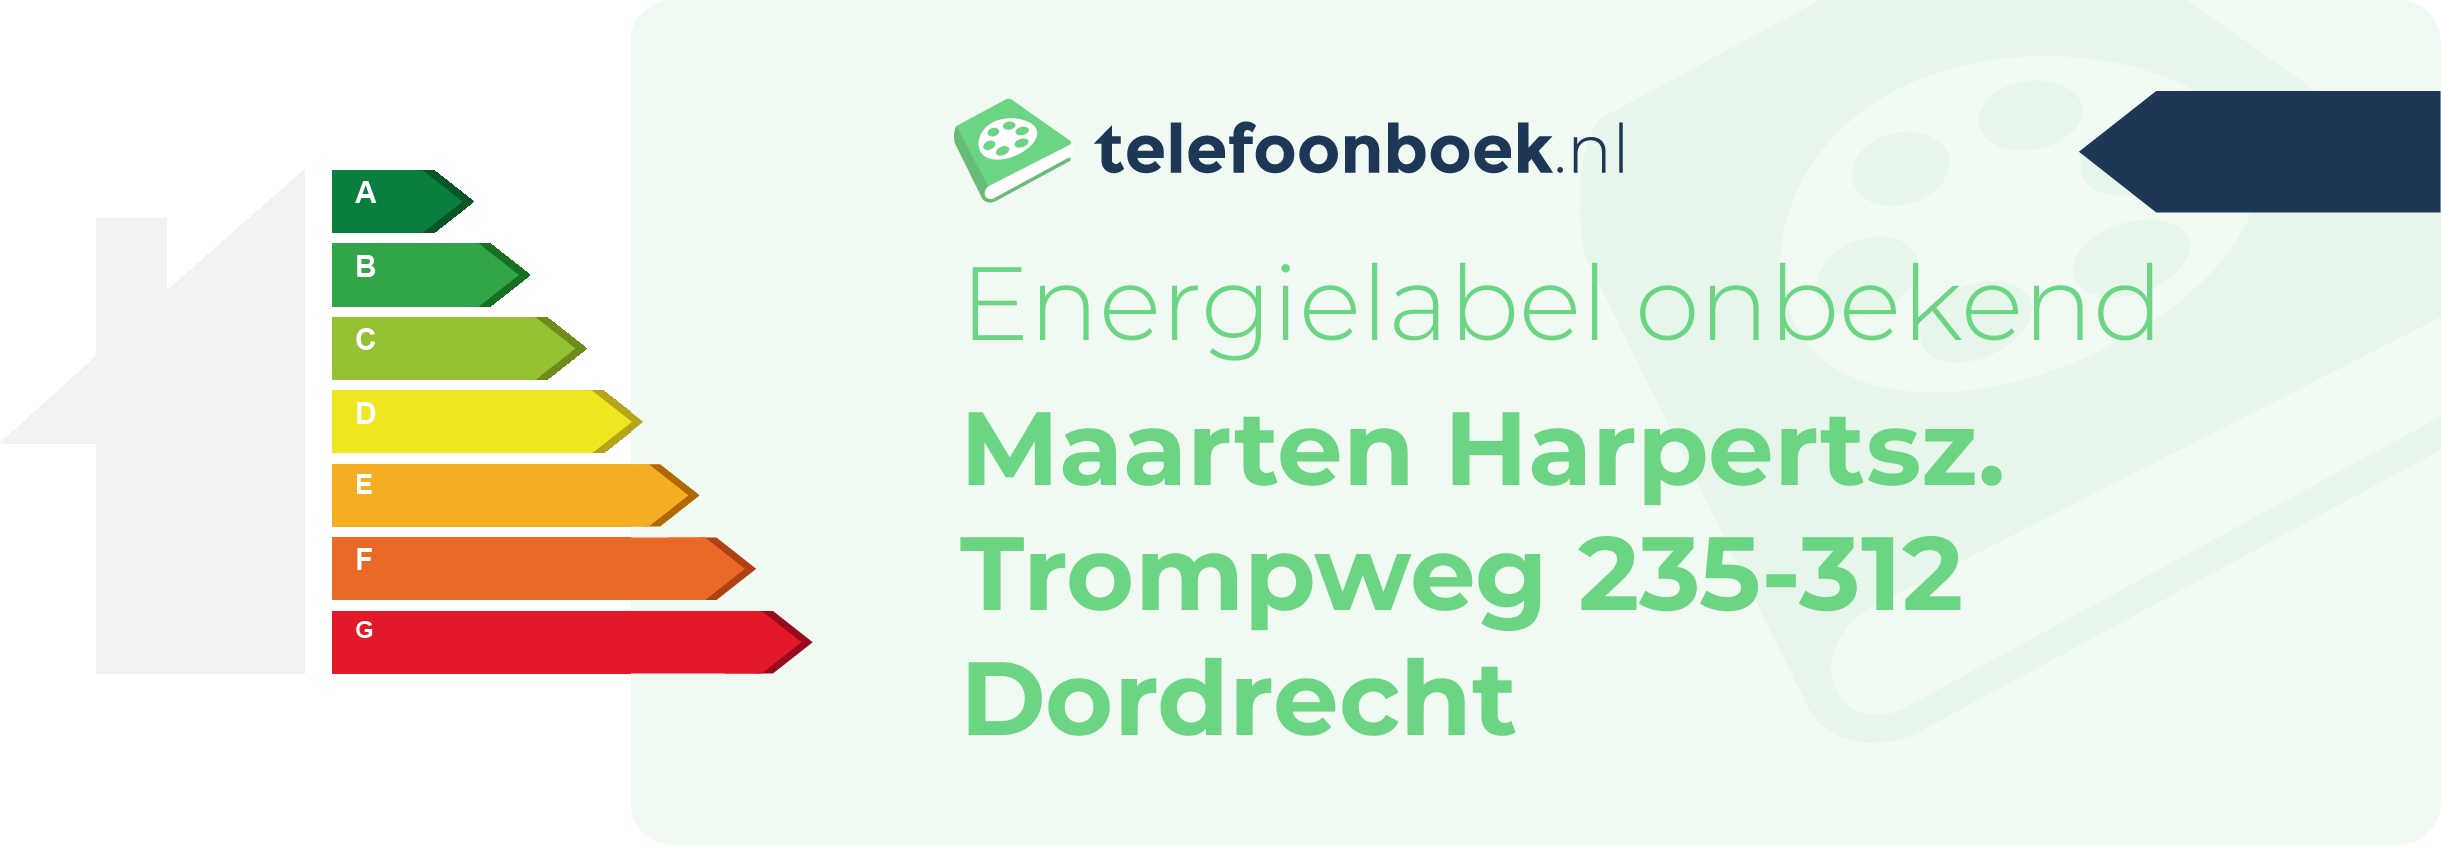 Energielabel Maarten Harpertsz. Trompweg 235-312 Dordrecht